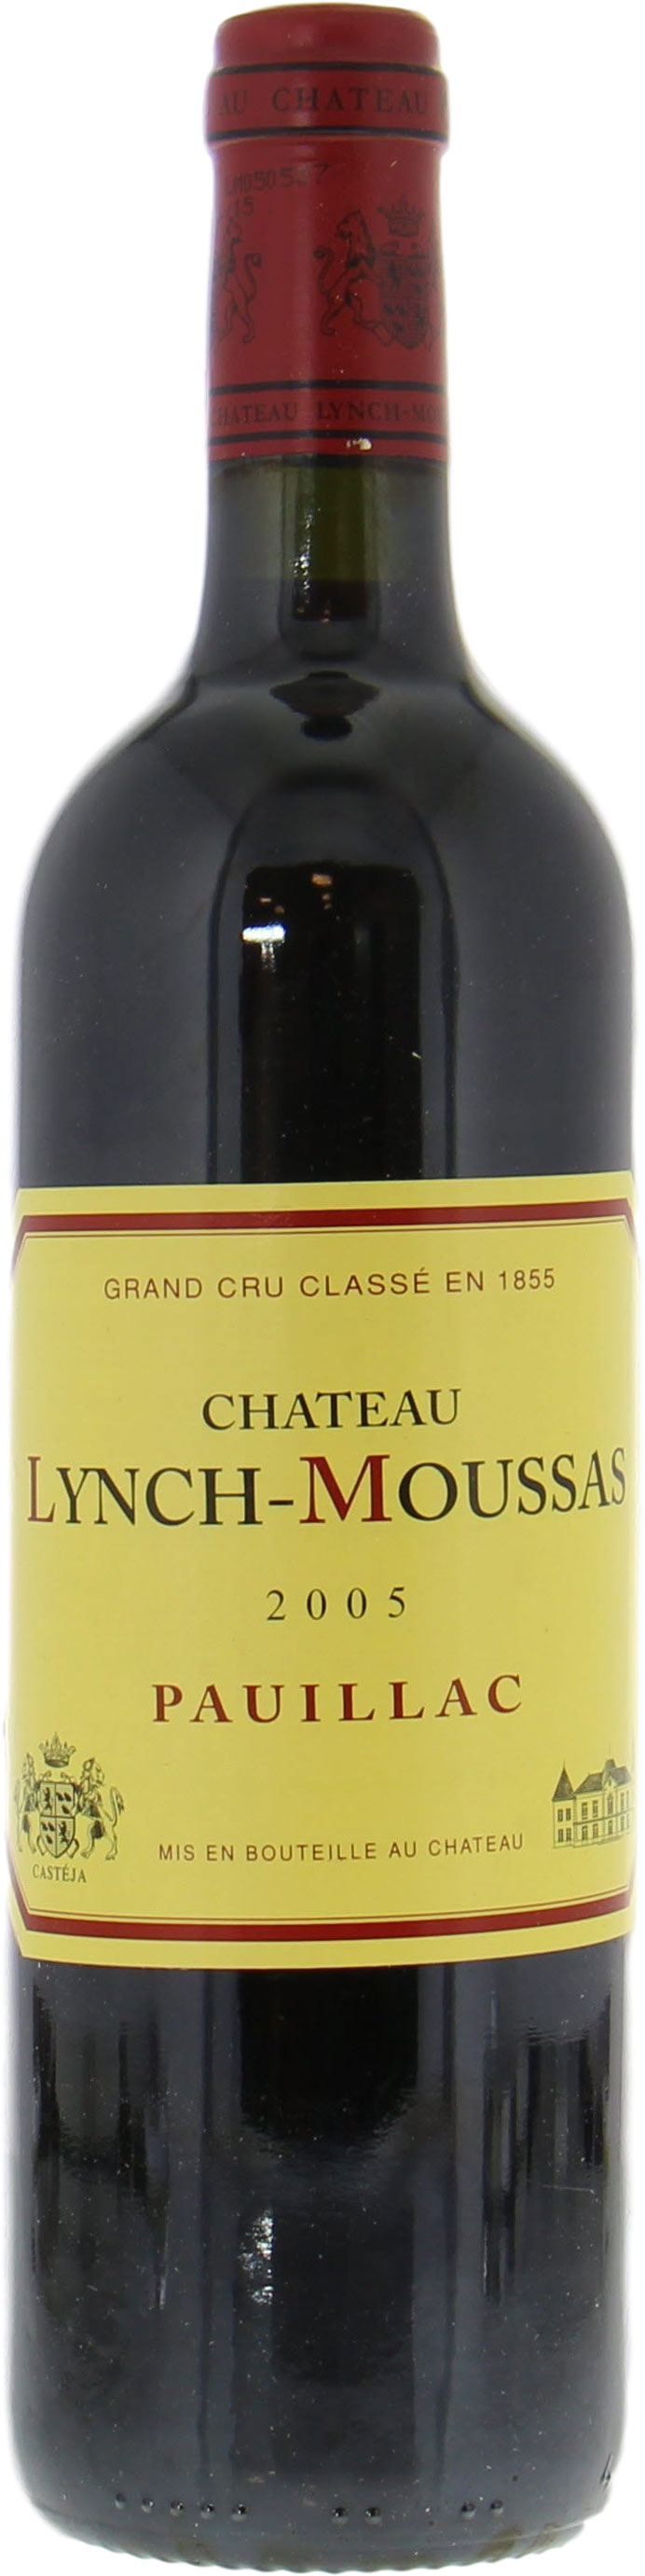 Chateau Lynch-Moussas - Chateau Lynch-Moussas 2005